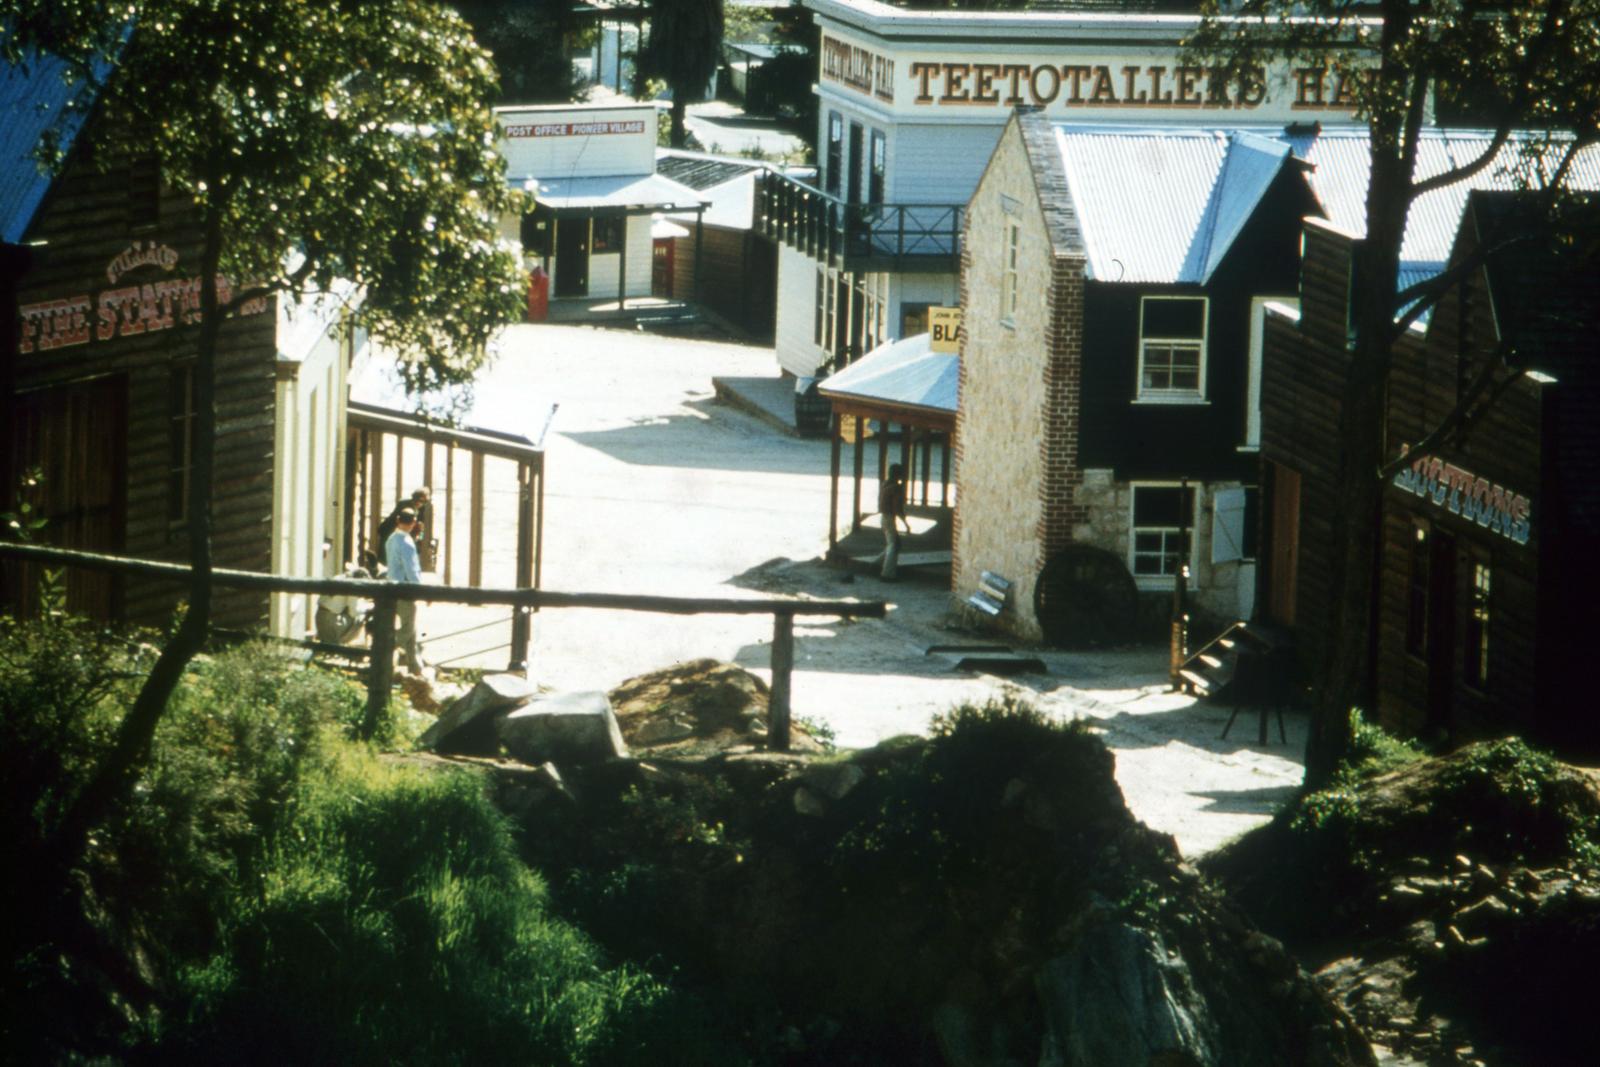 Street of Pioneer Village.